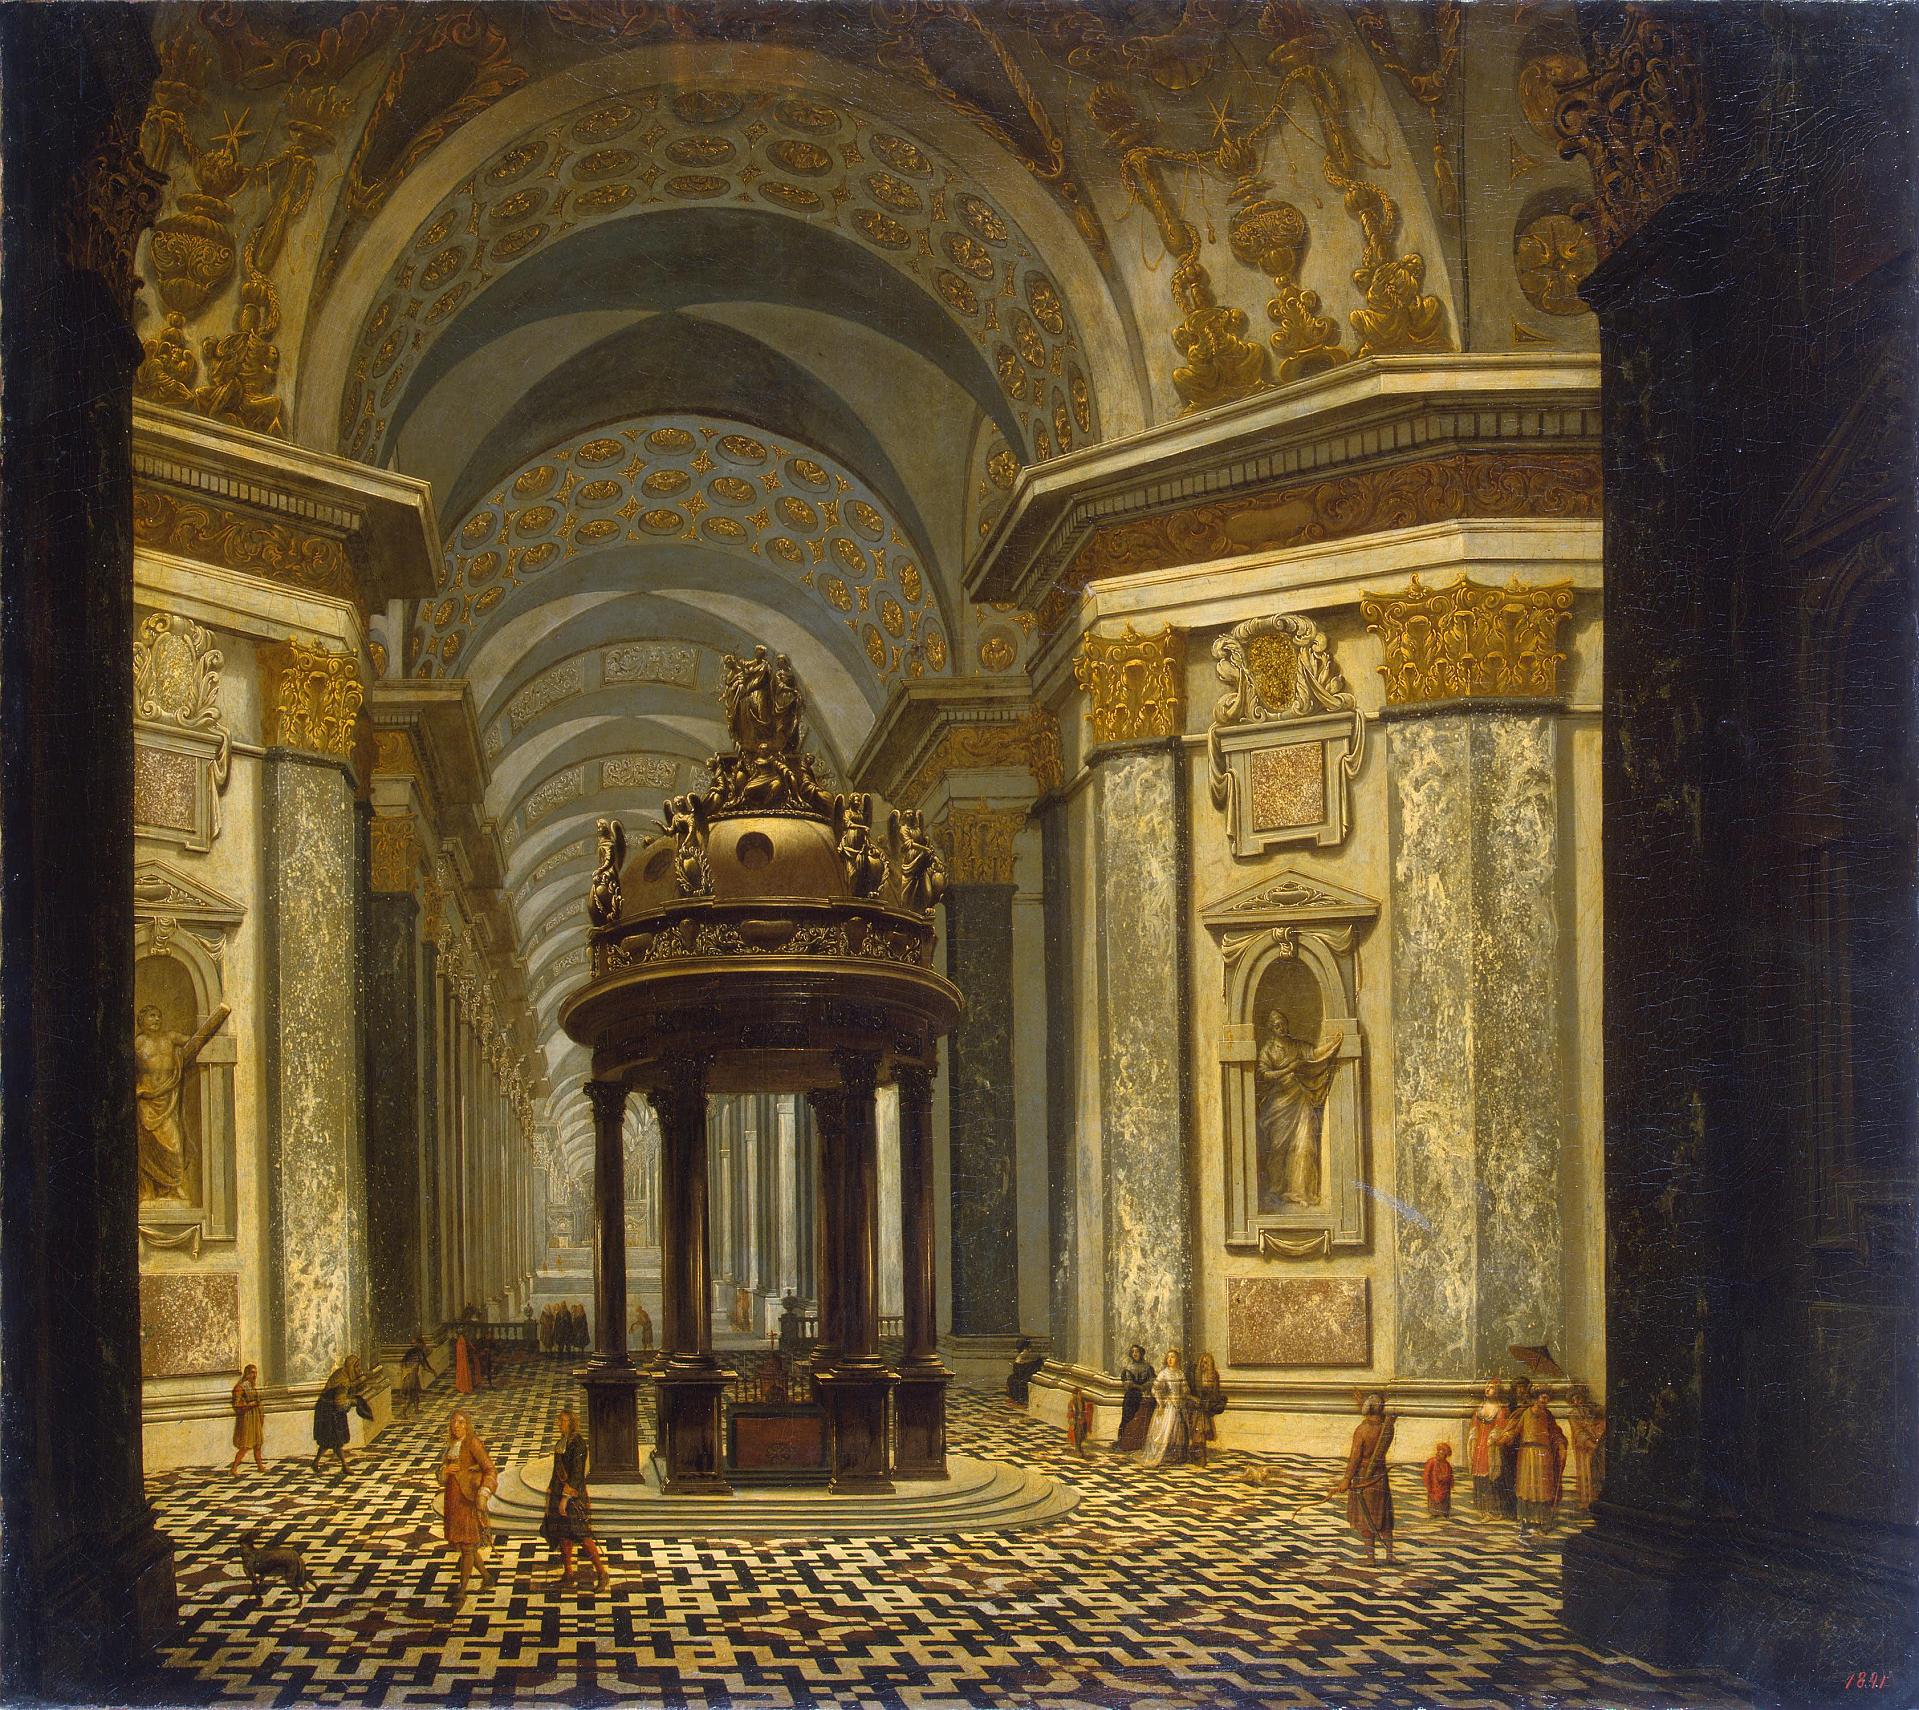 Вильгкльм Шуберт ван Эренберг. "Внутренний вид церкви". 1665. Эрмитаж, Санкт-Петербург.